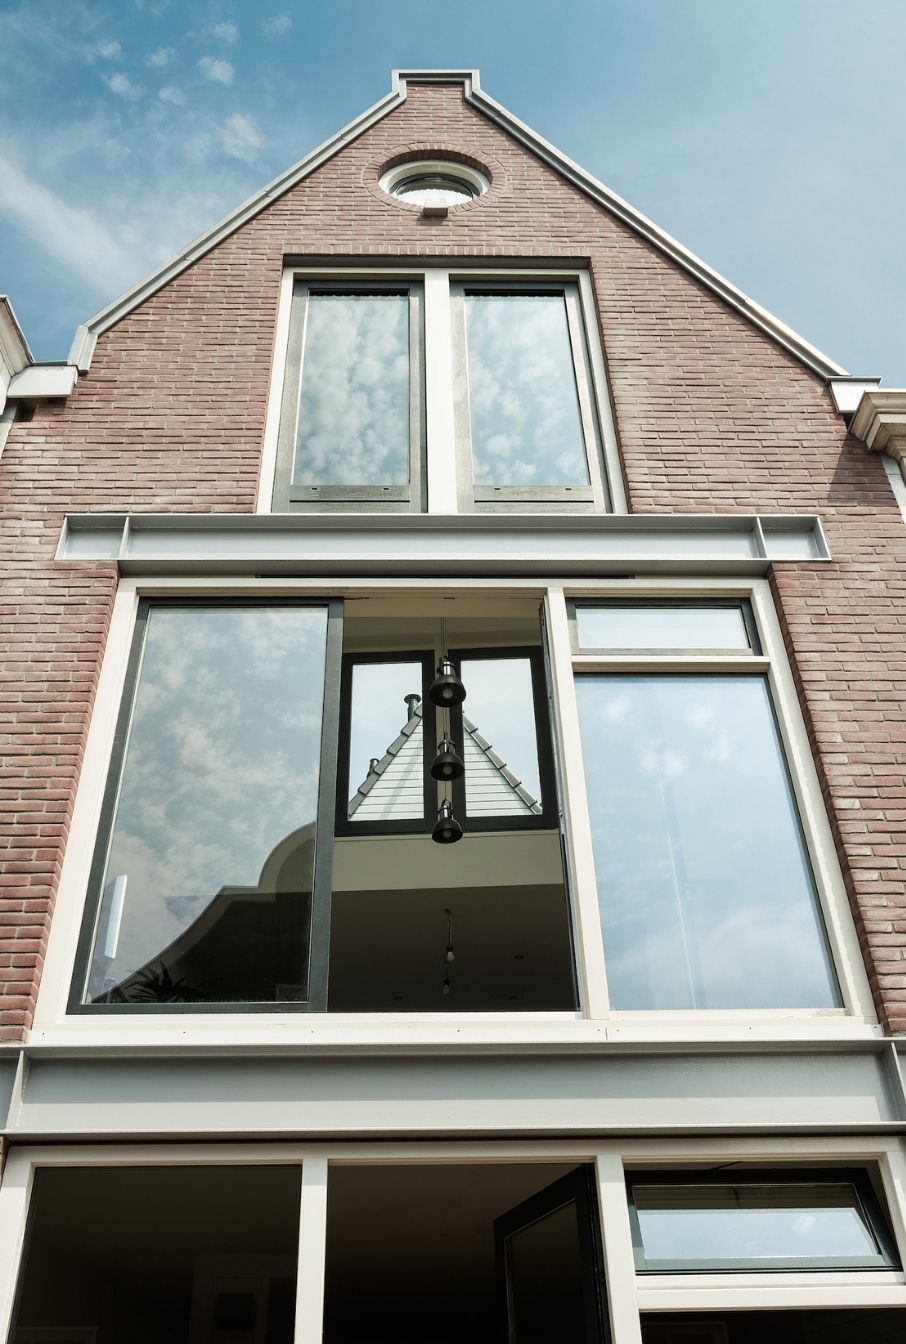 AG architecten woning Haarlem Doorkijk